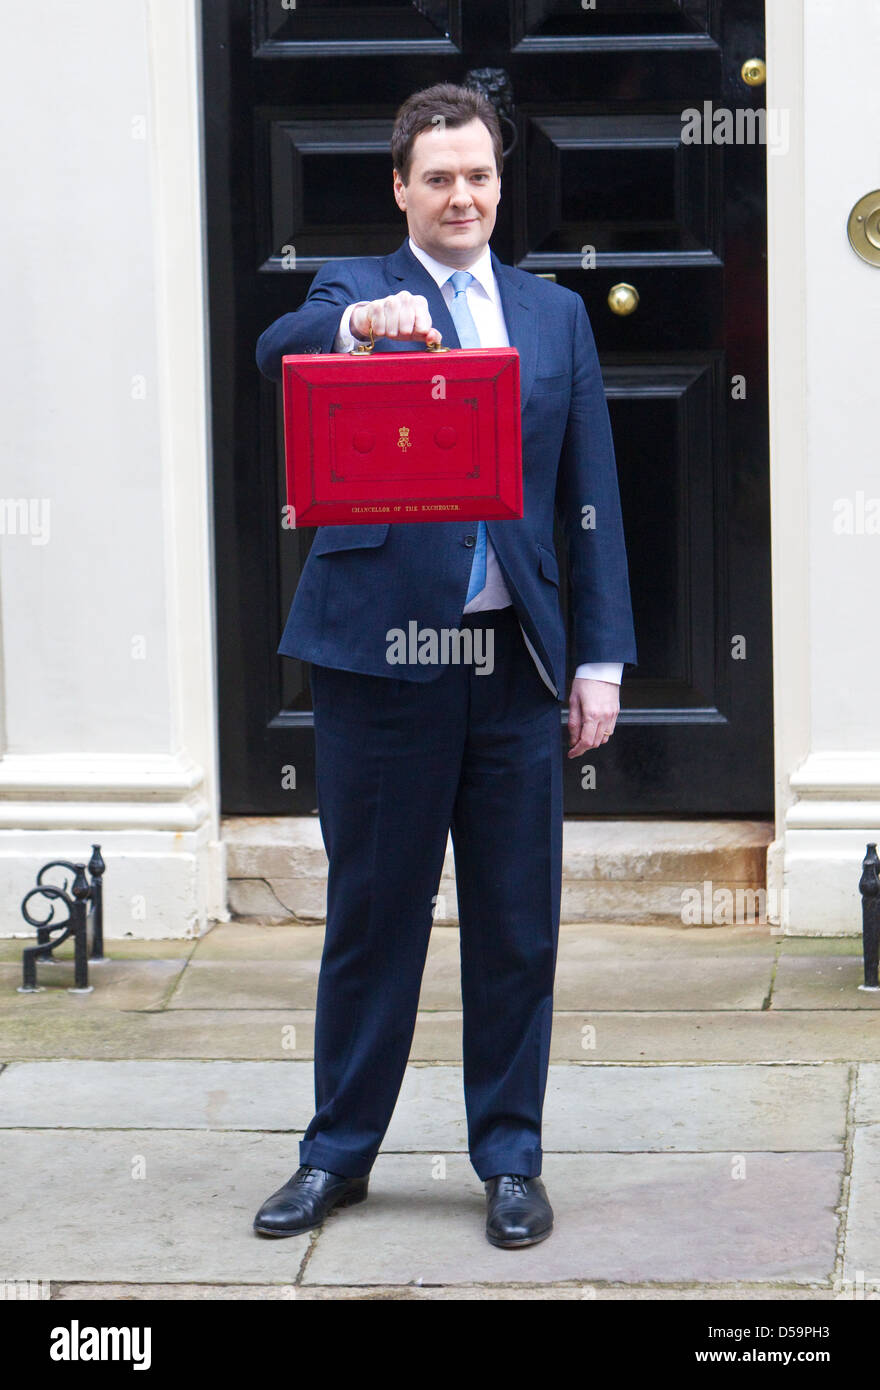 Schatzkanzler George Osbourne, lässt Nummer 11 Downing Street um sein Budget am 20. März 2013 liefern Stockfoto